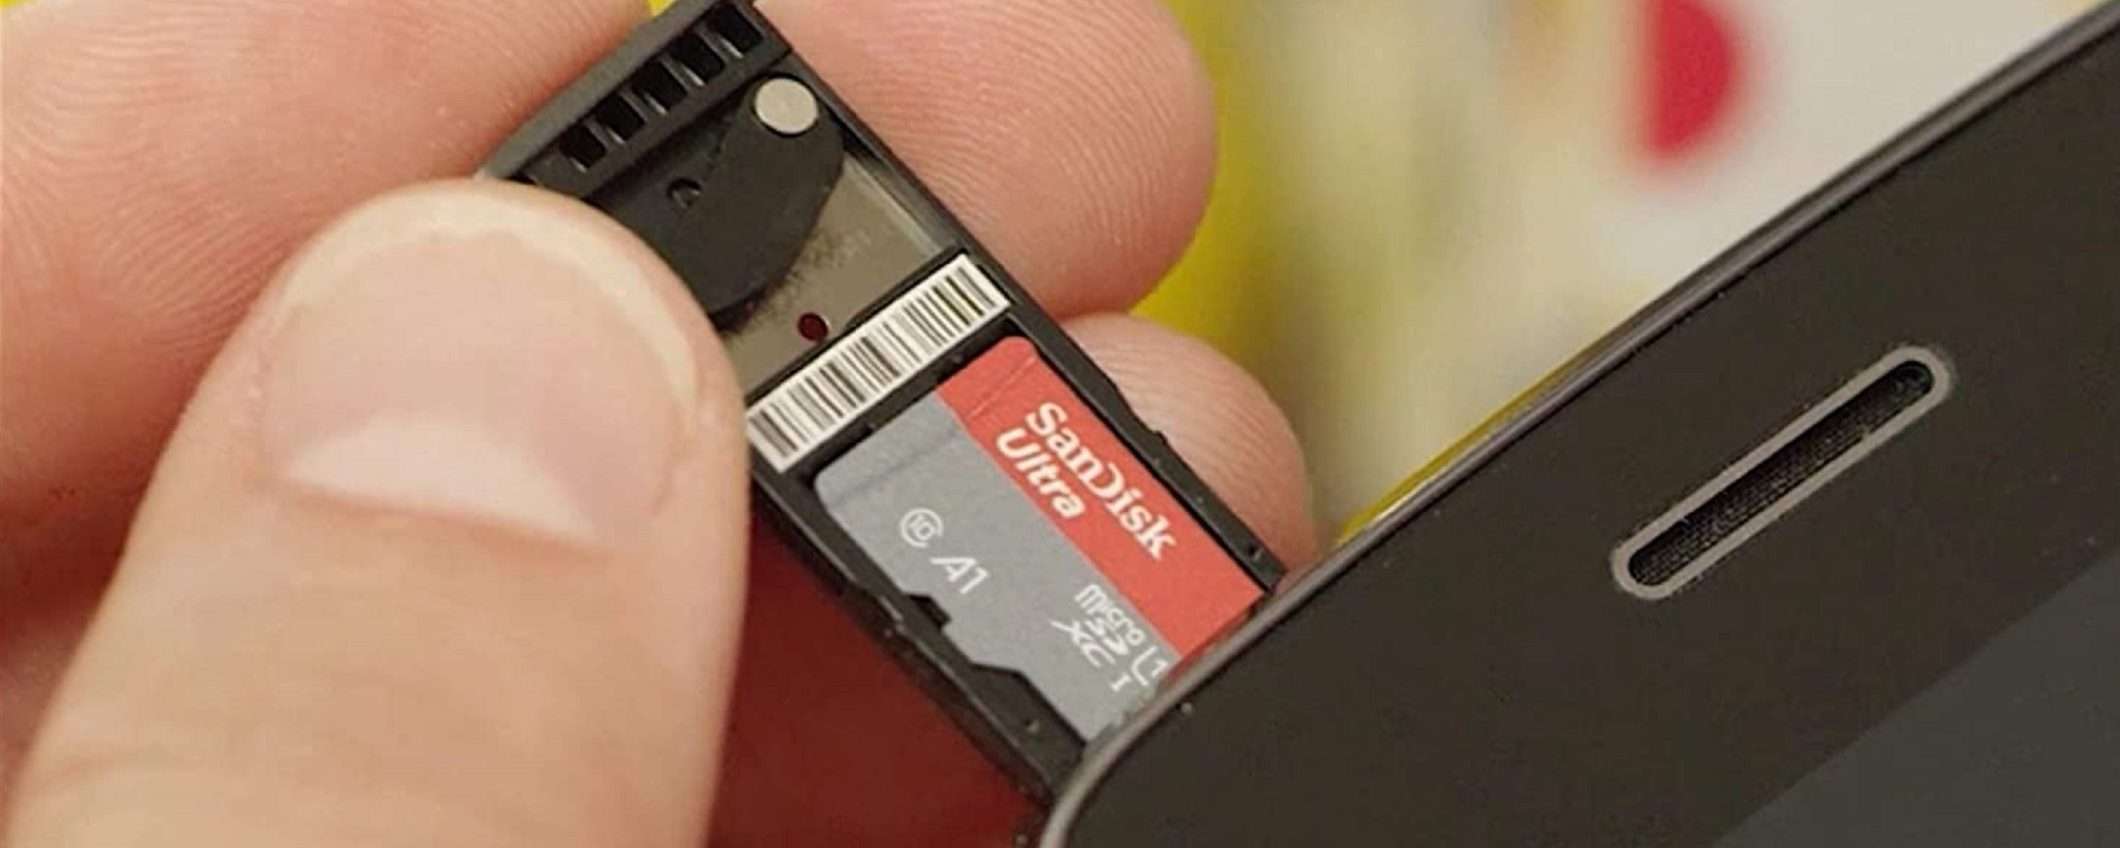 SanDisk Ultra microSDXC da 128GB con adattatore SD scontata del 48%